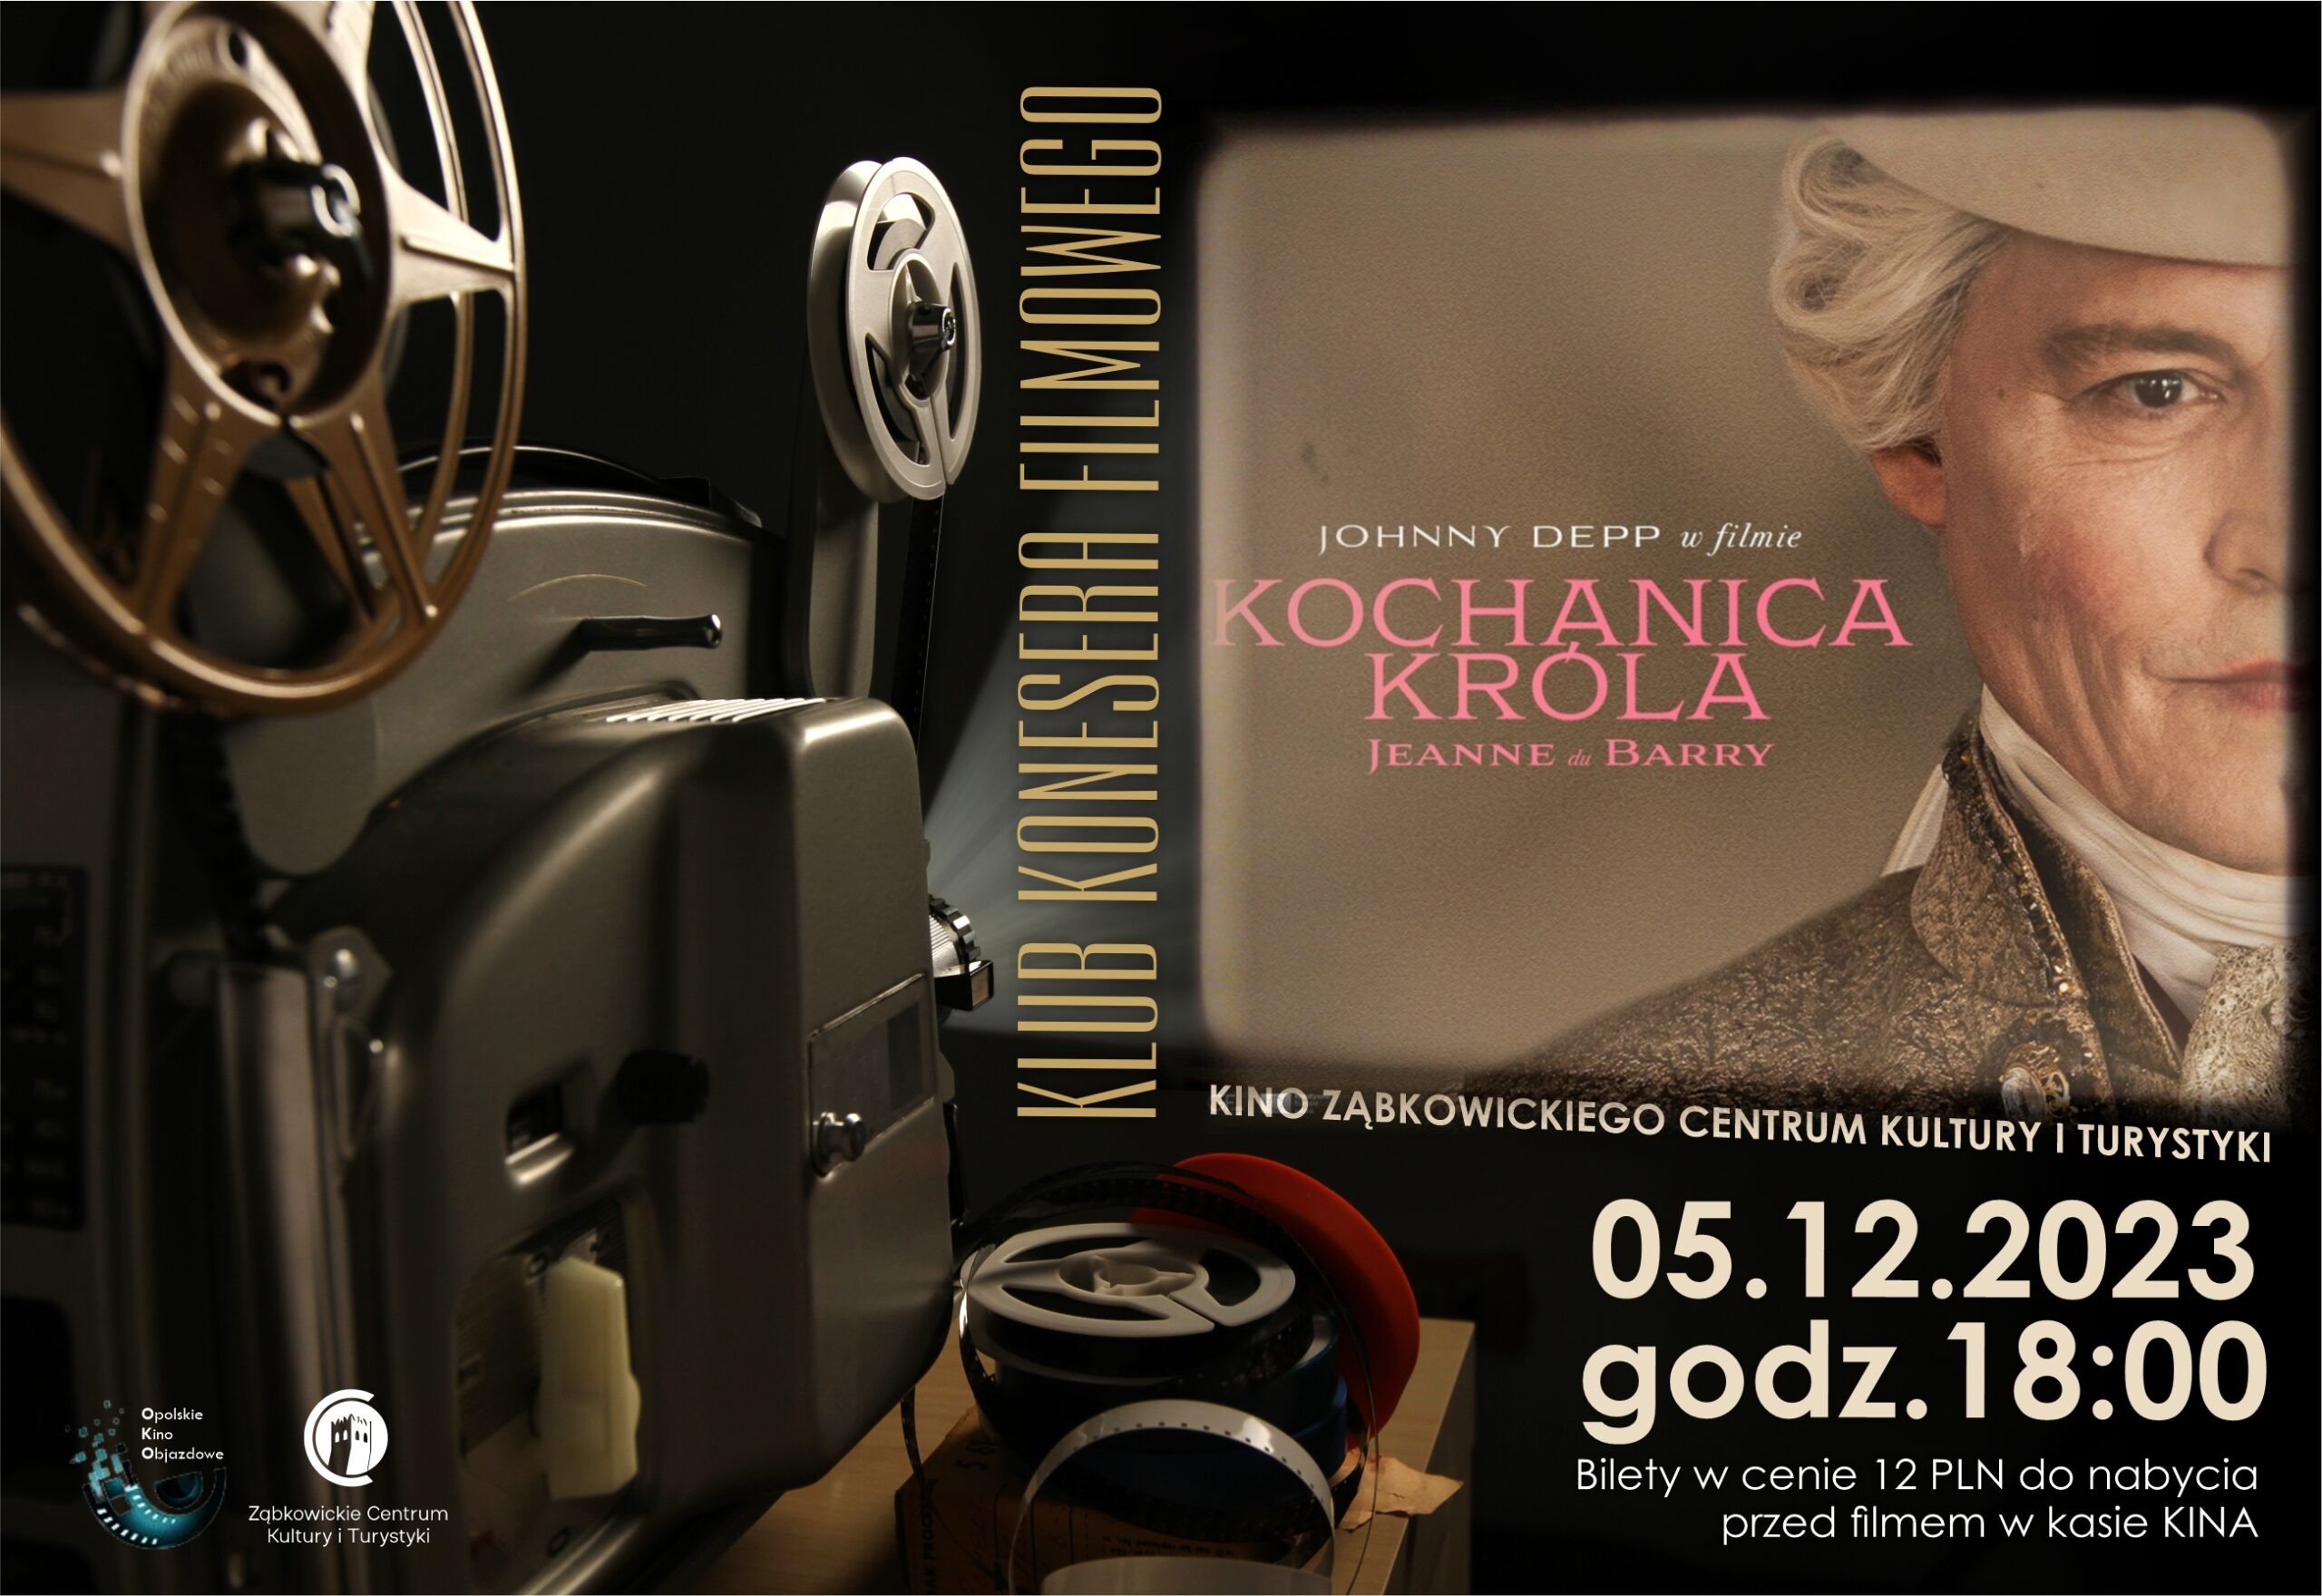 Plakat informacyjny o seansie filmu "Kochanica Króla" w kinie Ząbkowickiego Centrum Kultury i Turystyki 5 grudnia 2023 o godzinie 18:00. Na plakacie znajduje się kadr z filmu przedstawiający elegancko ubranego arystokratę.